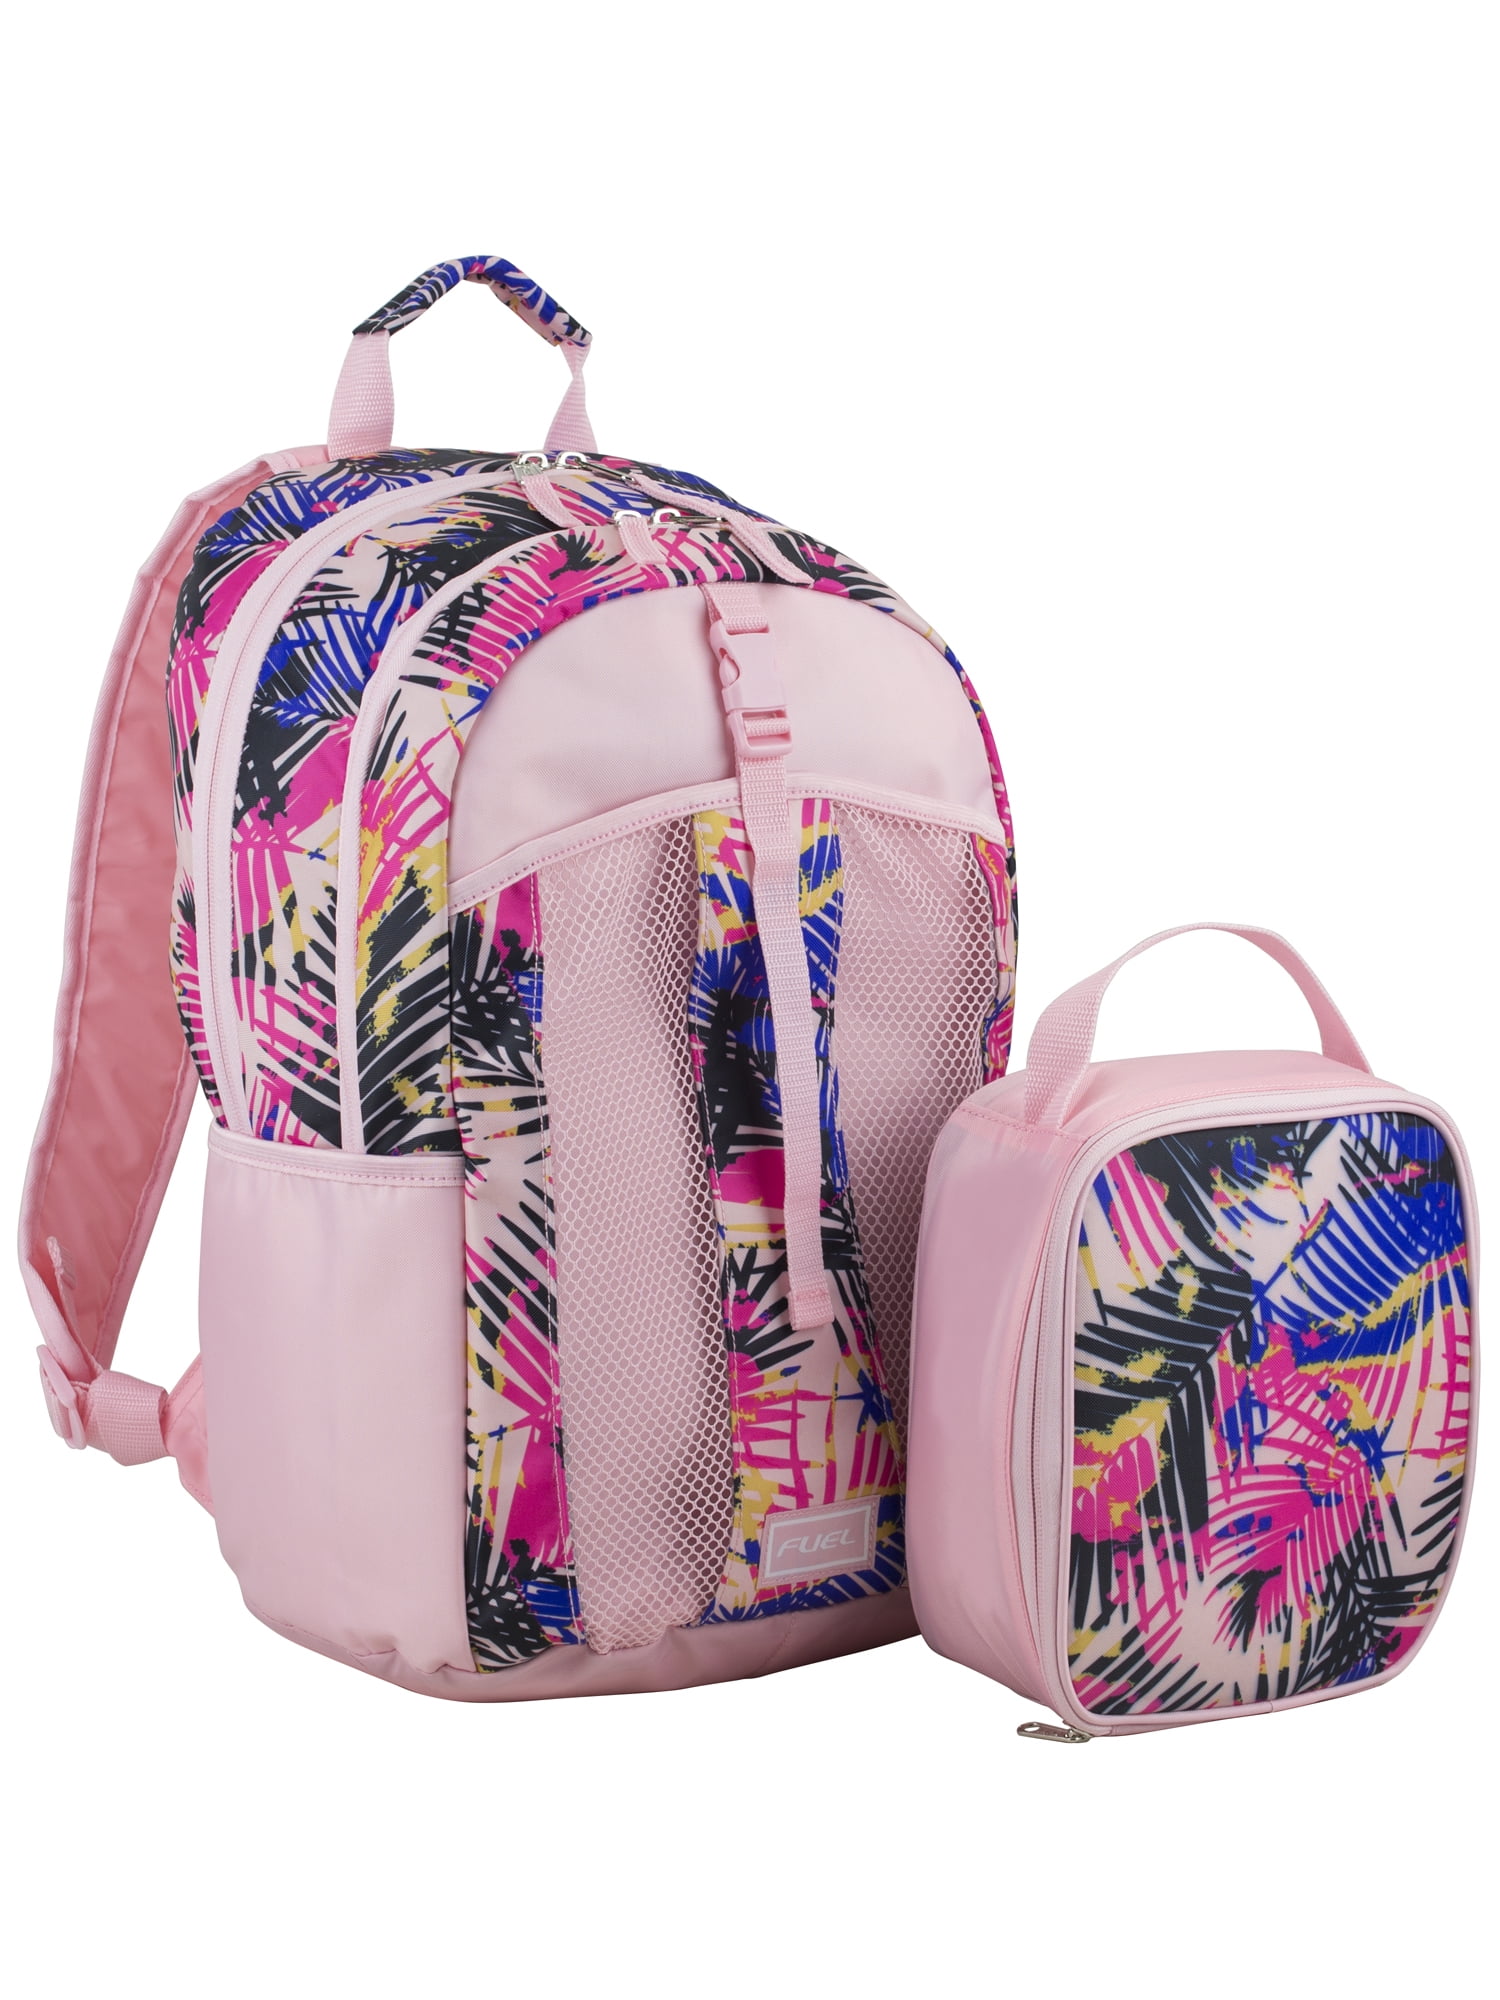 Fuel Top Loader Backpack & Lunch Bag Bundle Ash Gray/Dusk Lavender/Ombre 